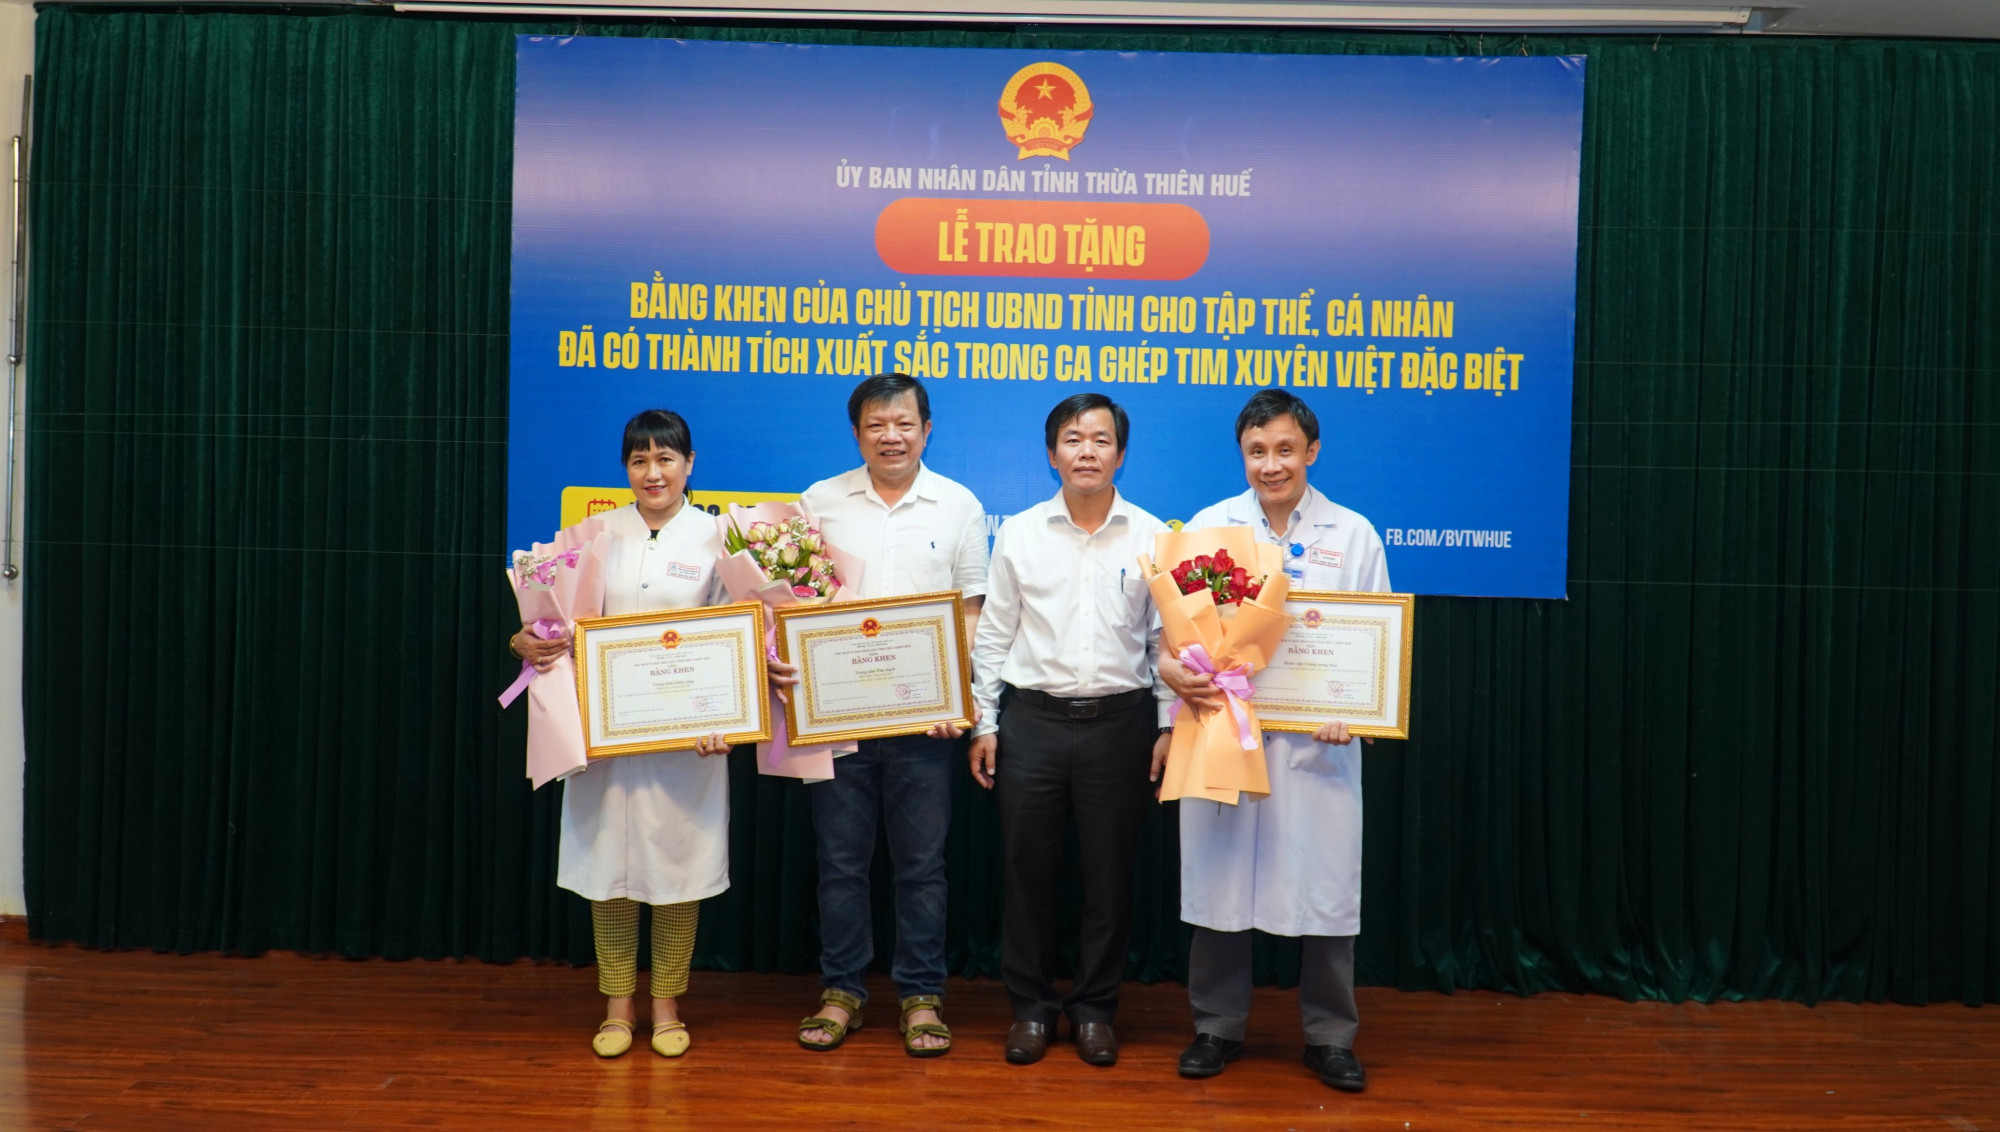 tỉnh Thừa Thiên - Huế, ông Nguyễn Văn Phương đã trao tặng 100 triệu đồng cho ê kíp tham gia ca ghép tim xuyên Việt đặc biệt 